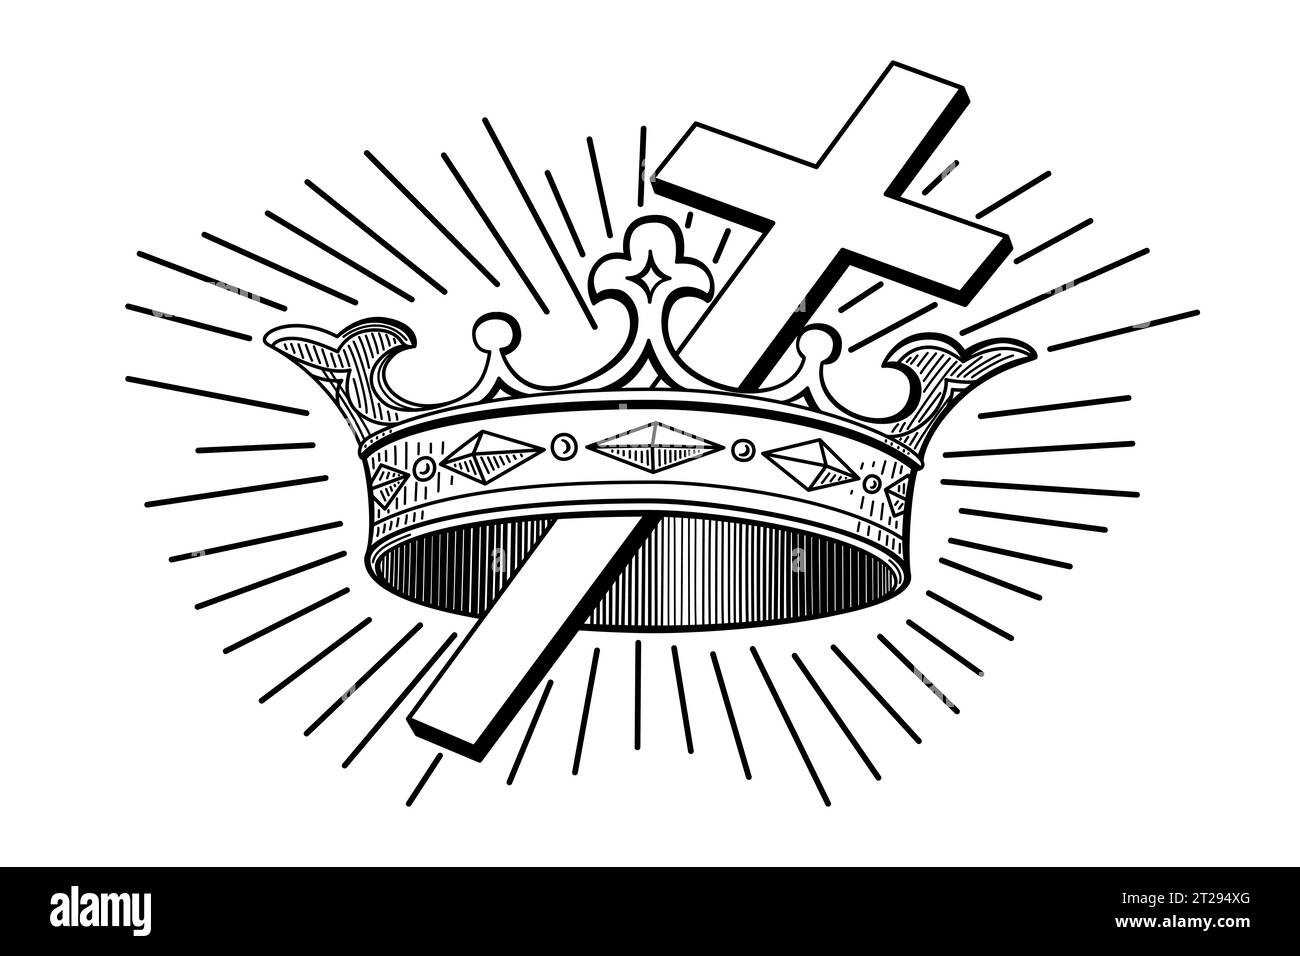 Kreuz und Krone, ein christliches Symbol. Die Krone steht für Belohnung im Himmel, nach den Prüfungen in diesem Leben, symbolisiert durch ein lateinisches Kreuz. Stockfoto